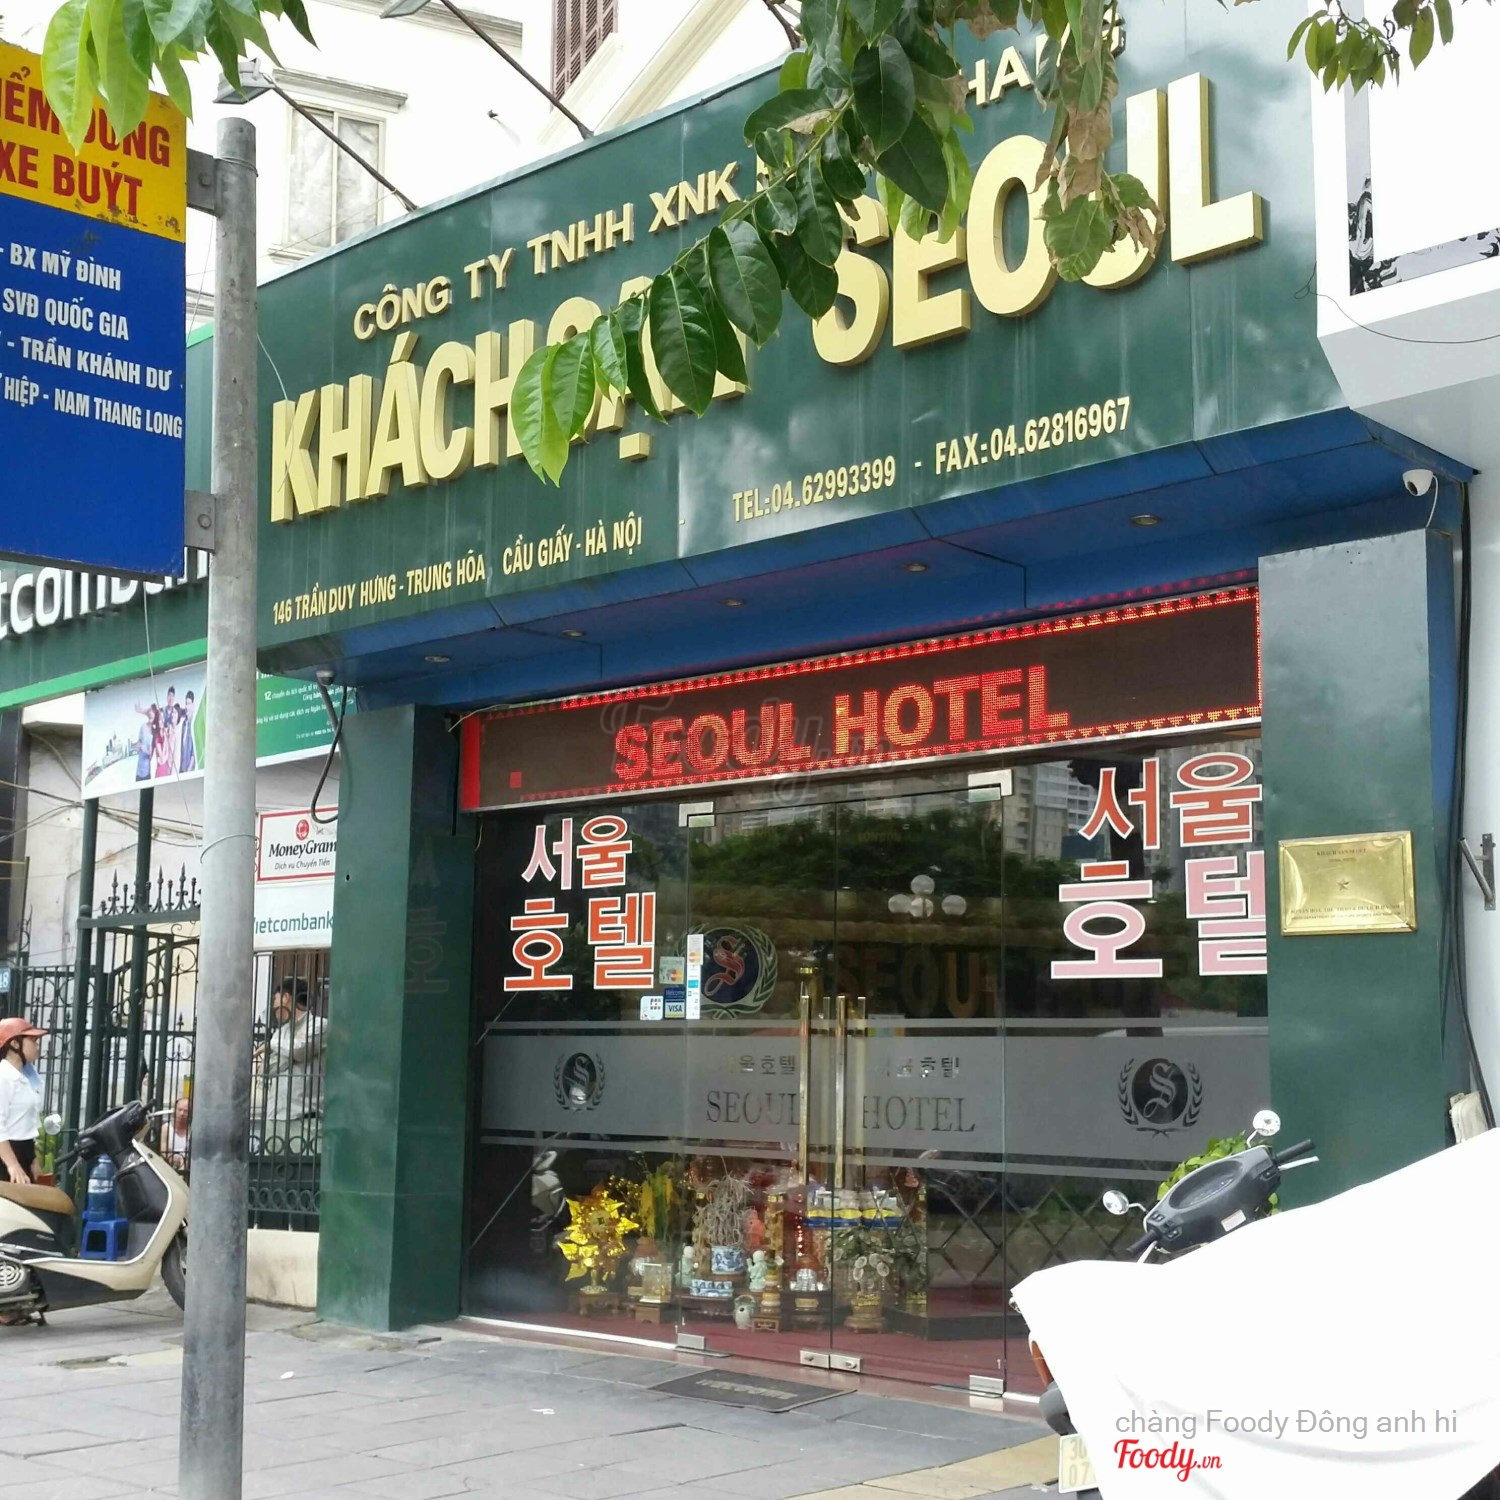 Seoul Hotel - Trần Duy Hưng Ở Quận Cầu Giấy, Hà Nội | Album Ảnh | Seoul  Hotel - Trần Duy Hưng | Foody.Vn